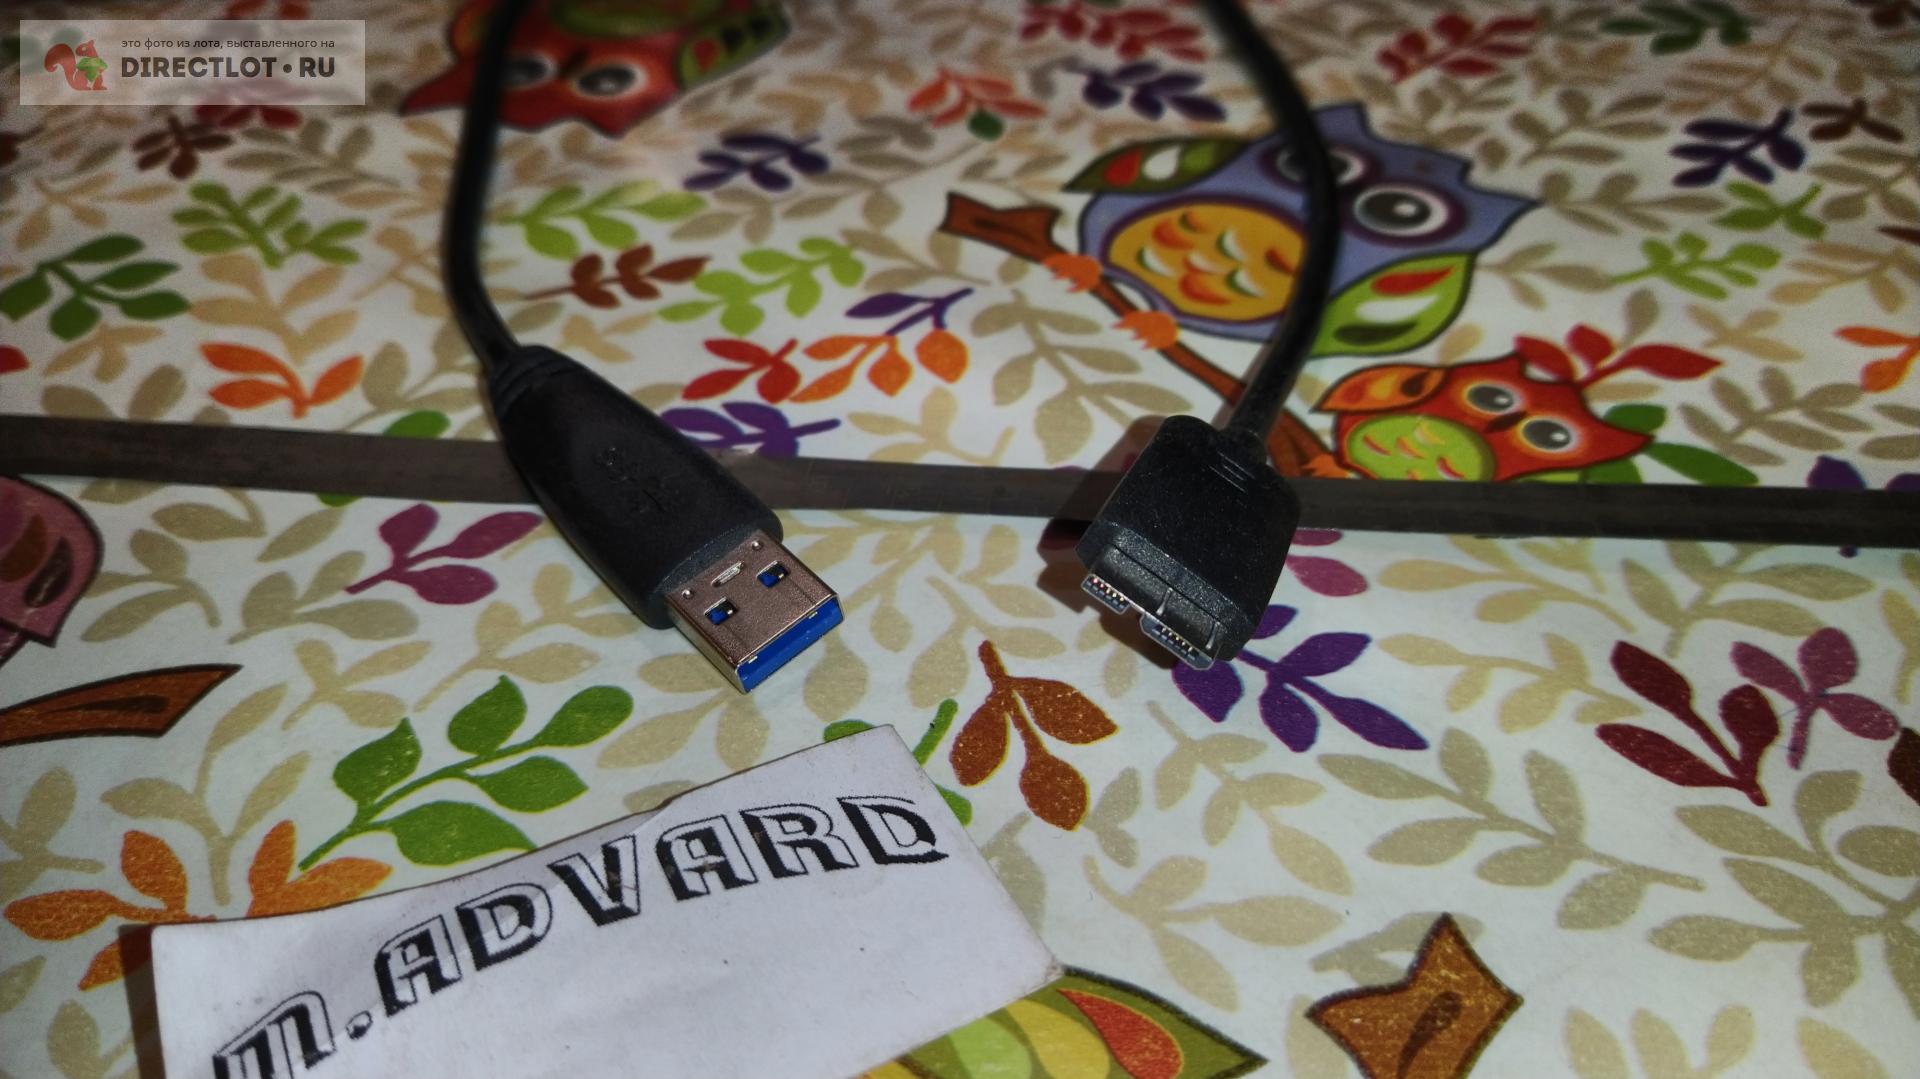 Продам Провод USB 3.0 45cm  на DIRECTLOT.RU